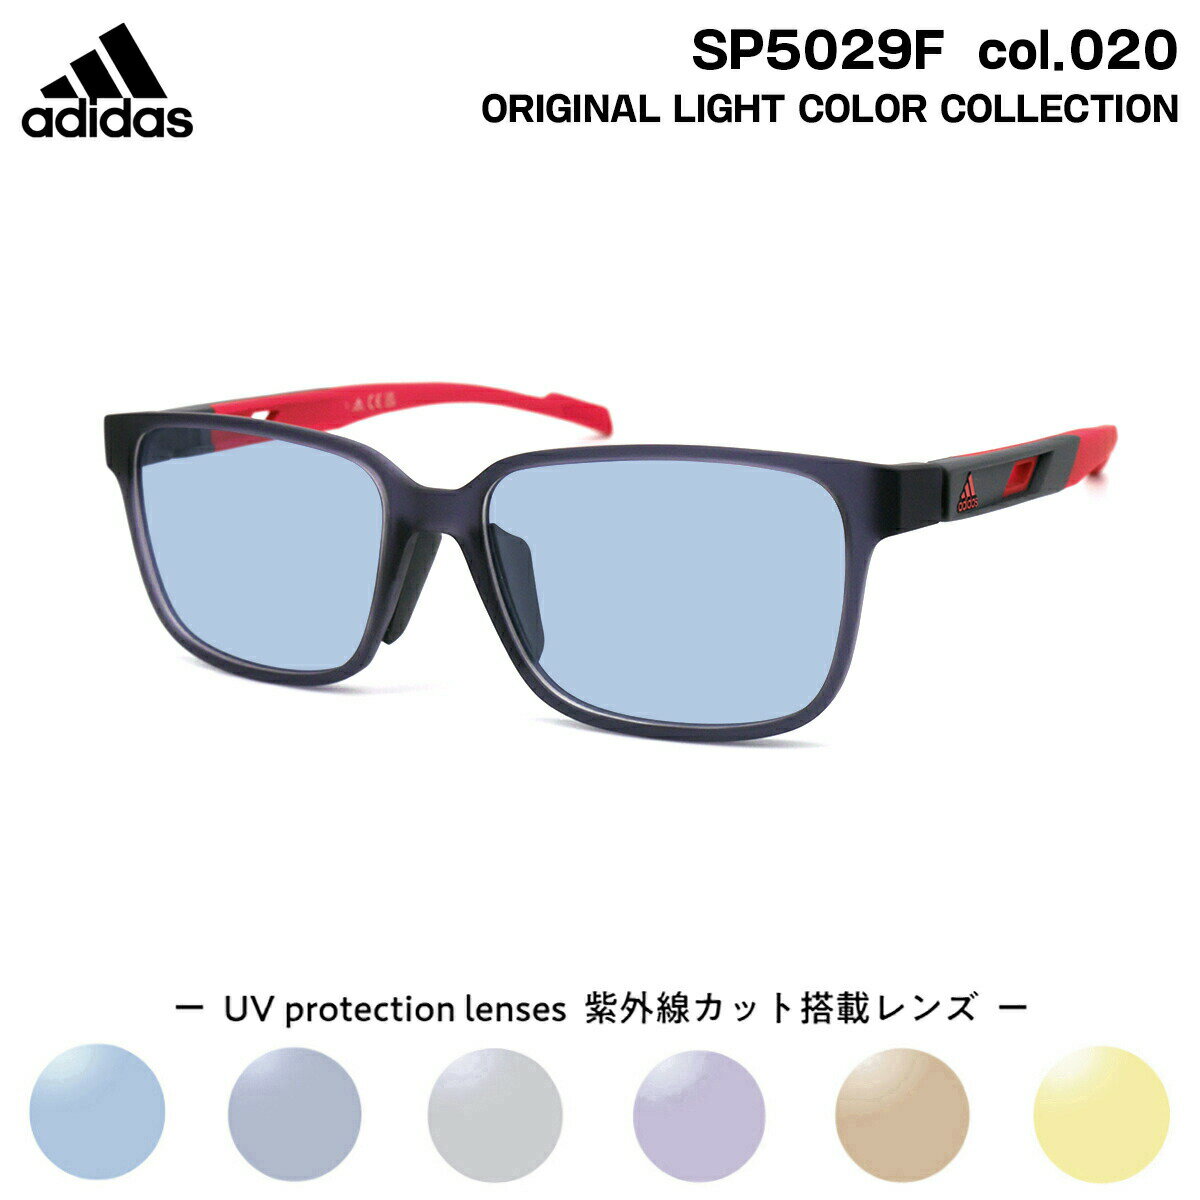 アディダス アディダス サングラス ライトカラー SP5029F (SP5029F/V) col.020 56mm adidas アジアンフィット 国内正規品 UVカット メンズ レディース